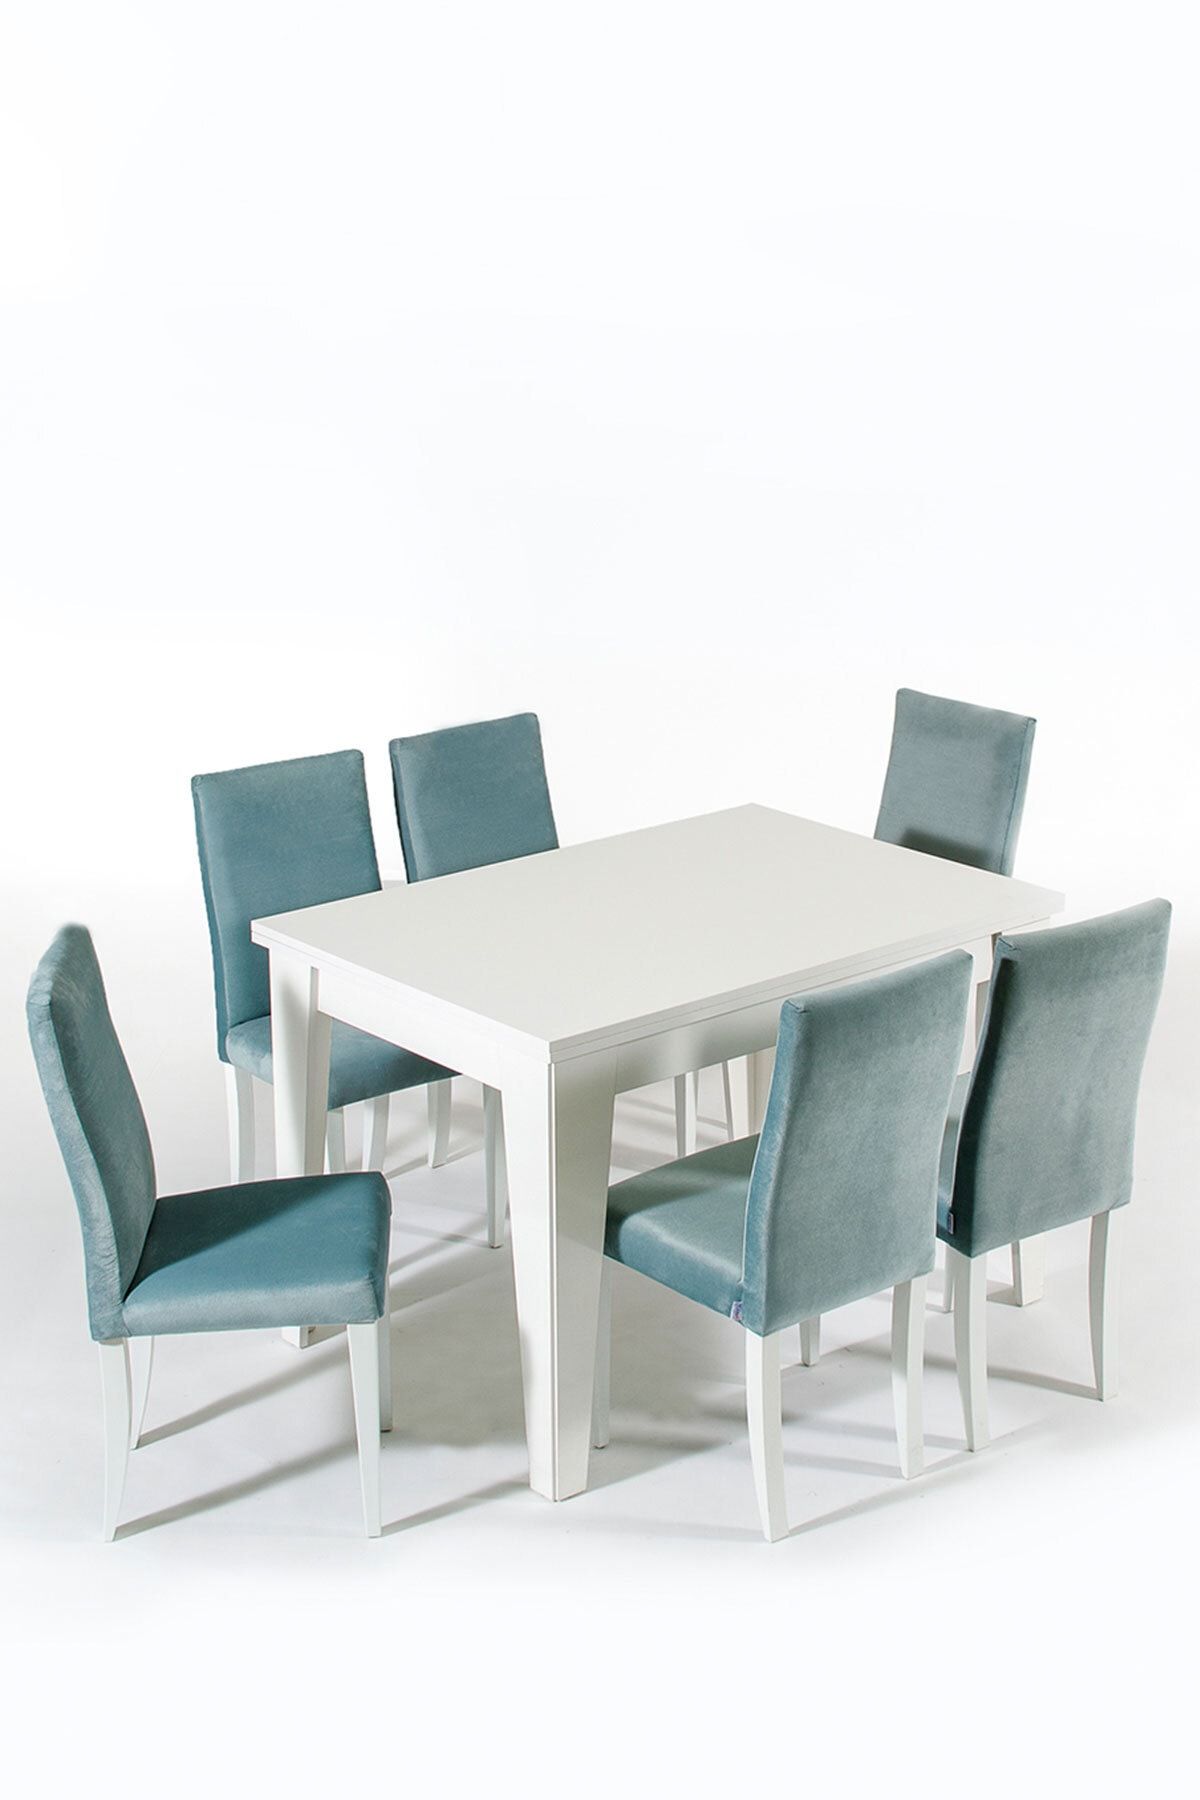 Modalife Bianco 6 Sandalye 1 Açılır Masa Yemek Masası Takımı 6 Kişilik - Aytaşı